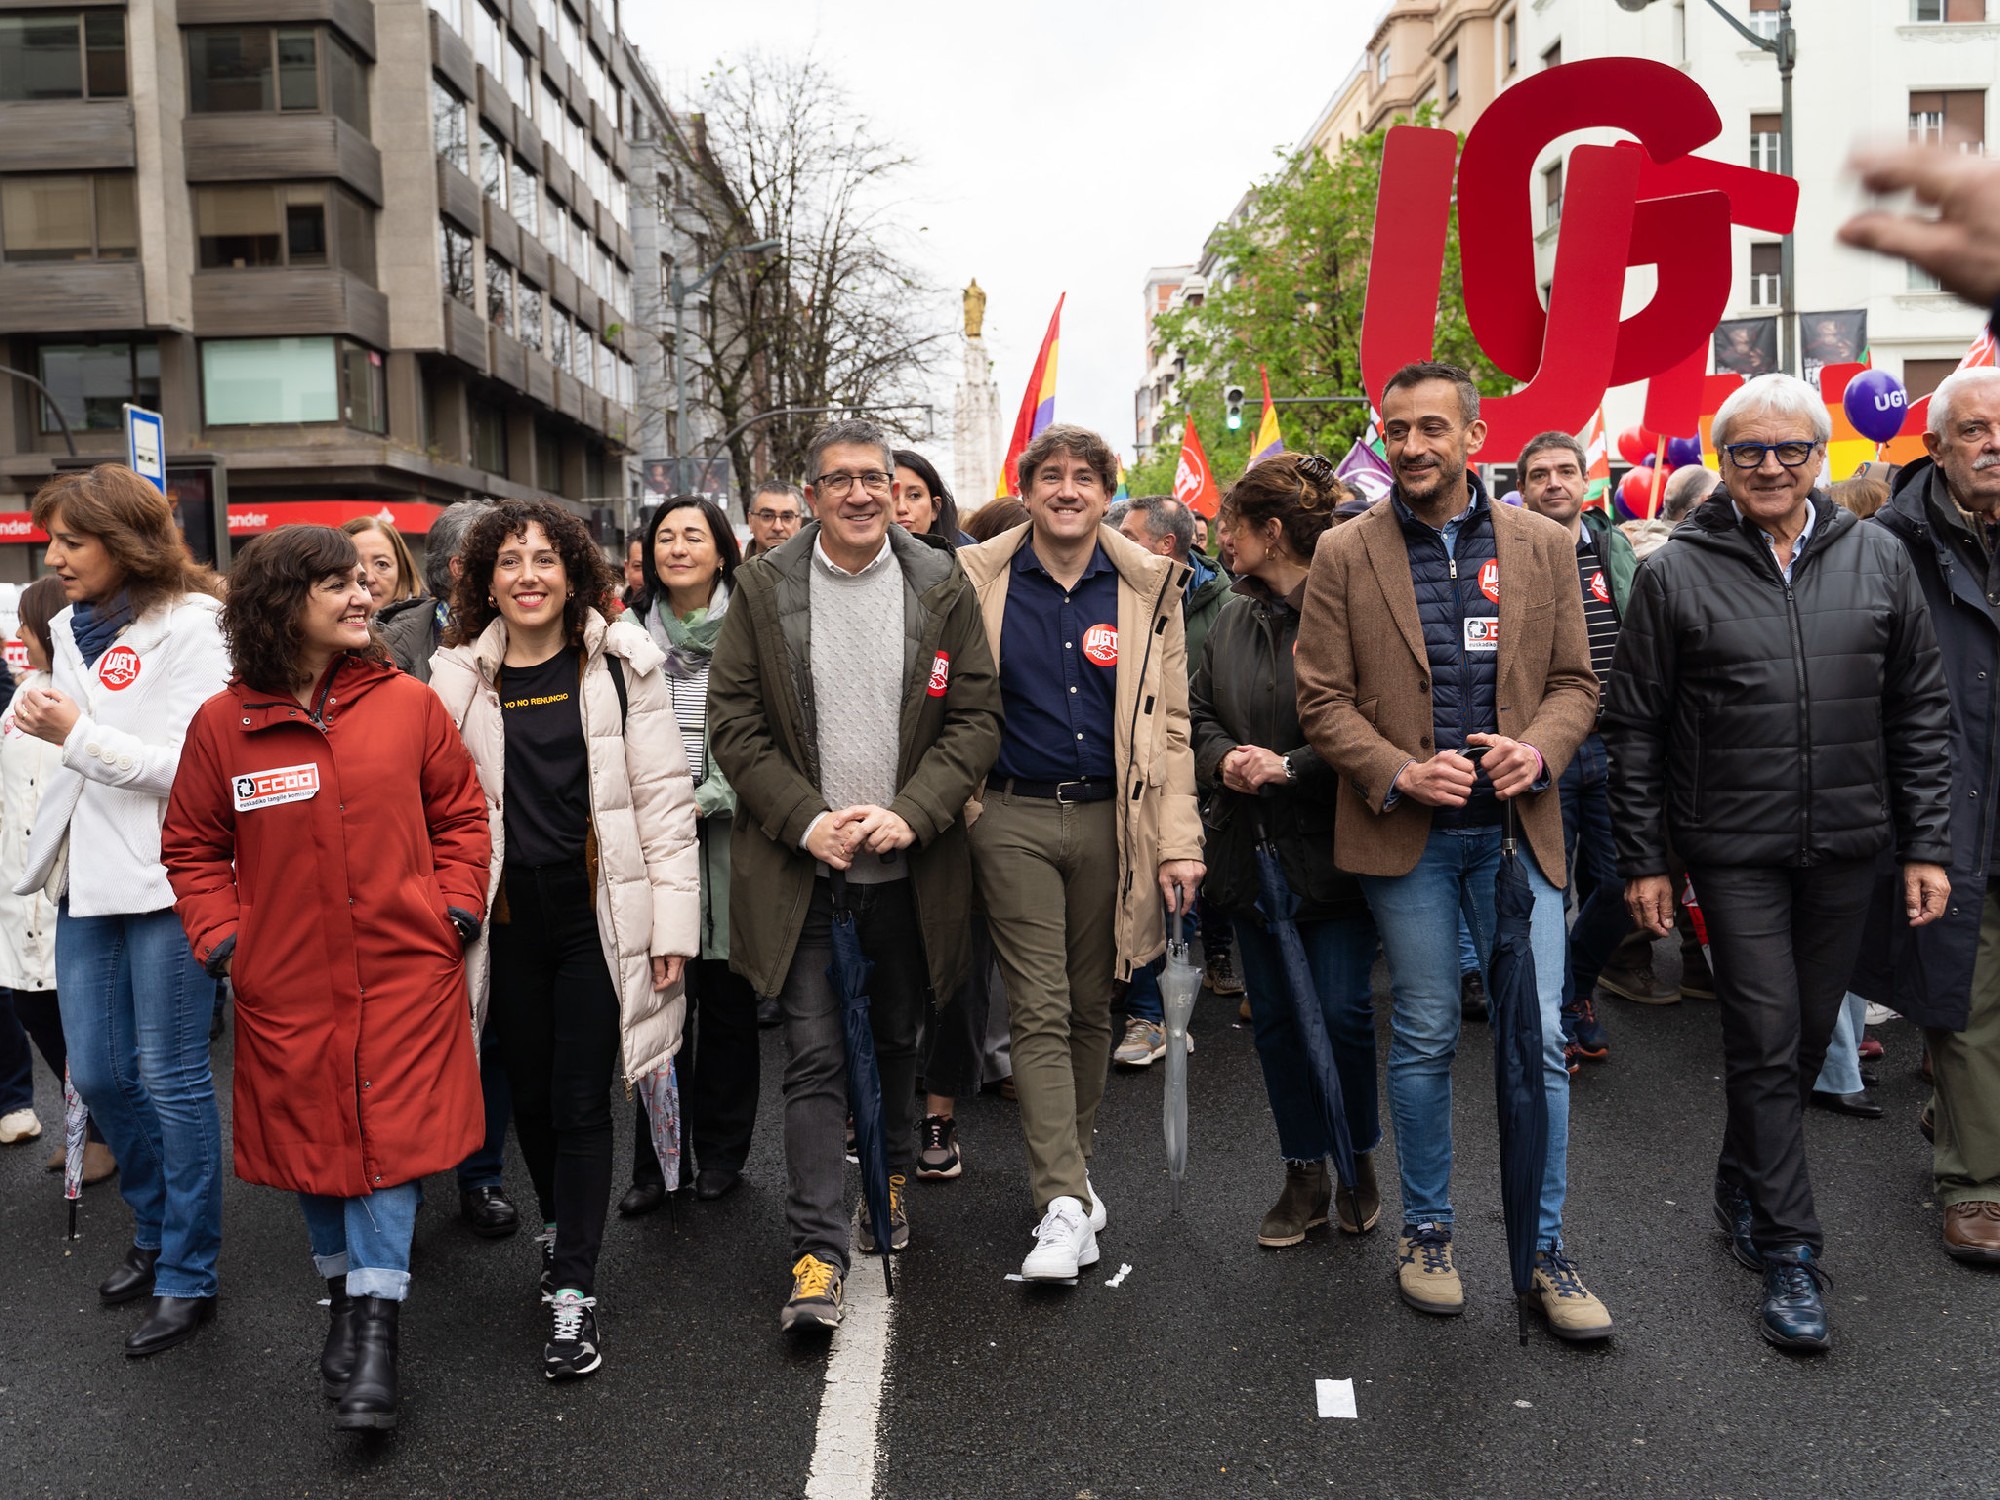 El Secretario General del PSE-EE, Eneko Andueza, junto a la representación socialista en la manifestación por el 1º de mayo celebrada en Bilbao | Foto: Socialistas Vascos